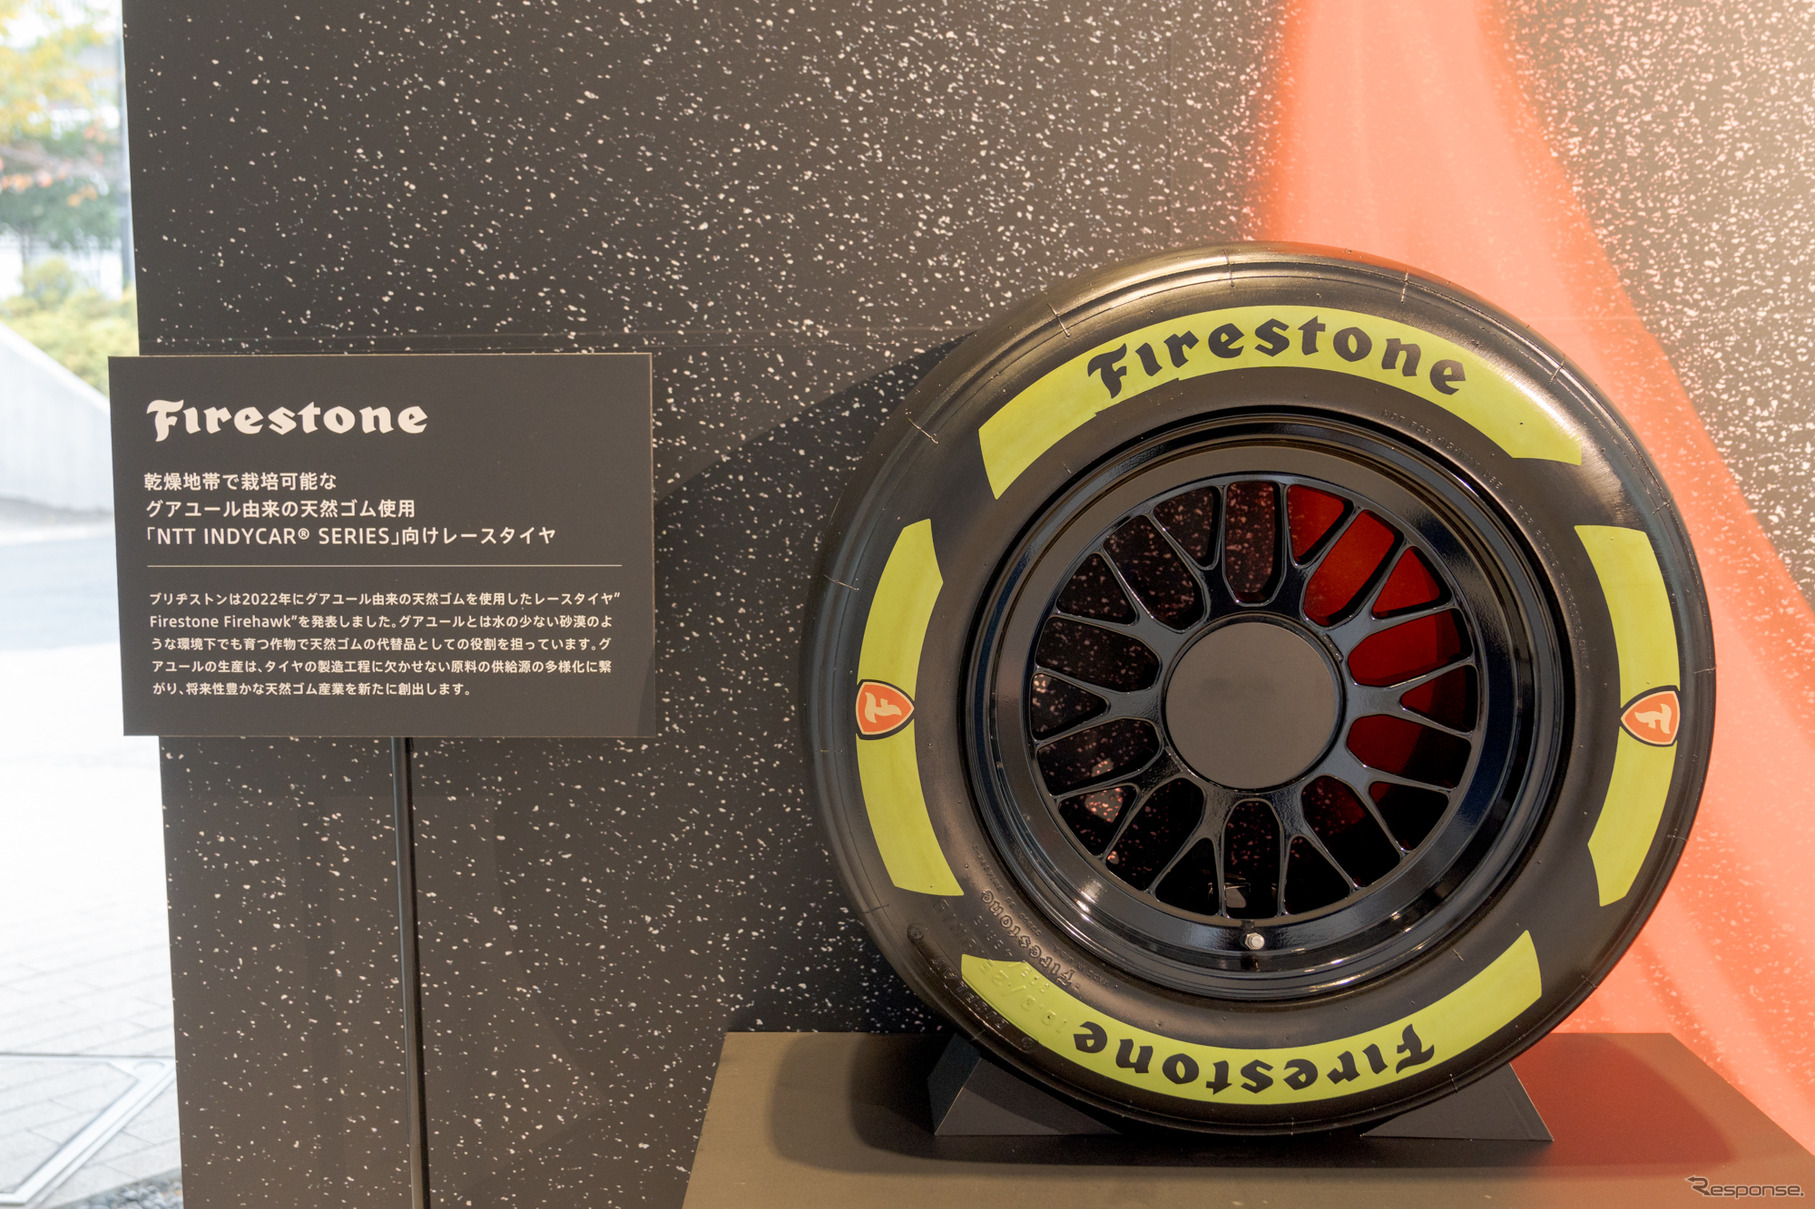 インディカーレースでは、ファイアストンブランドでグアユール由来の天然ゴムを使用したレースタイヤを使用。